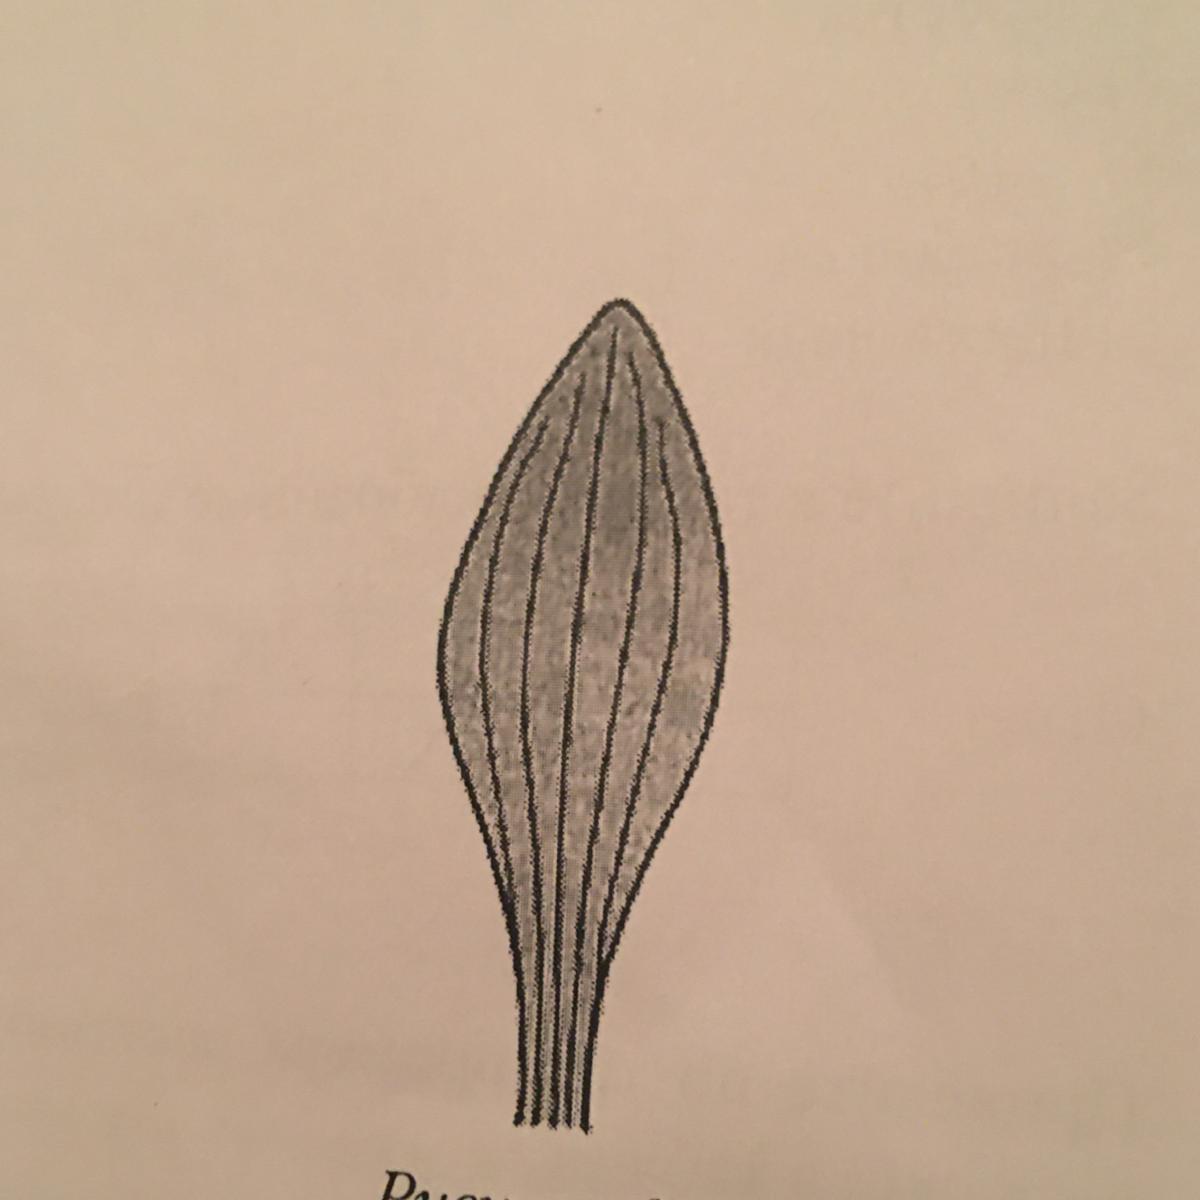 К какому классу относится растения лист который показан на рисунке